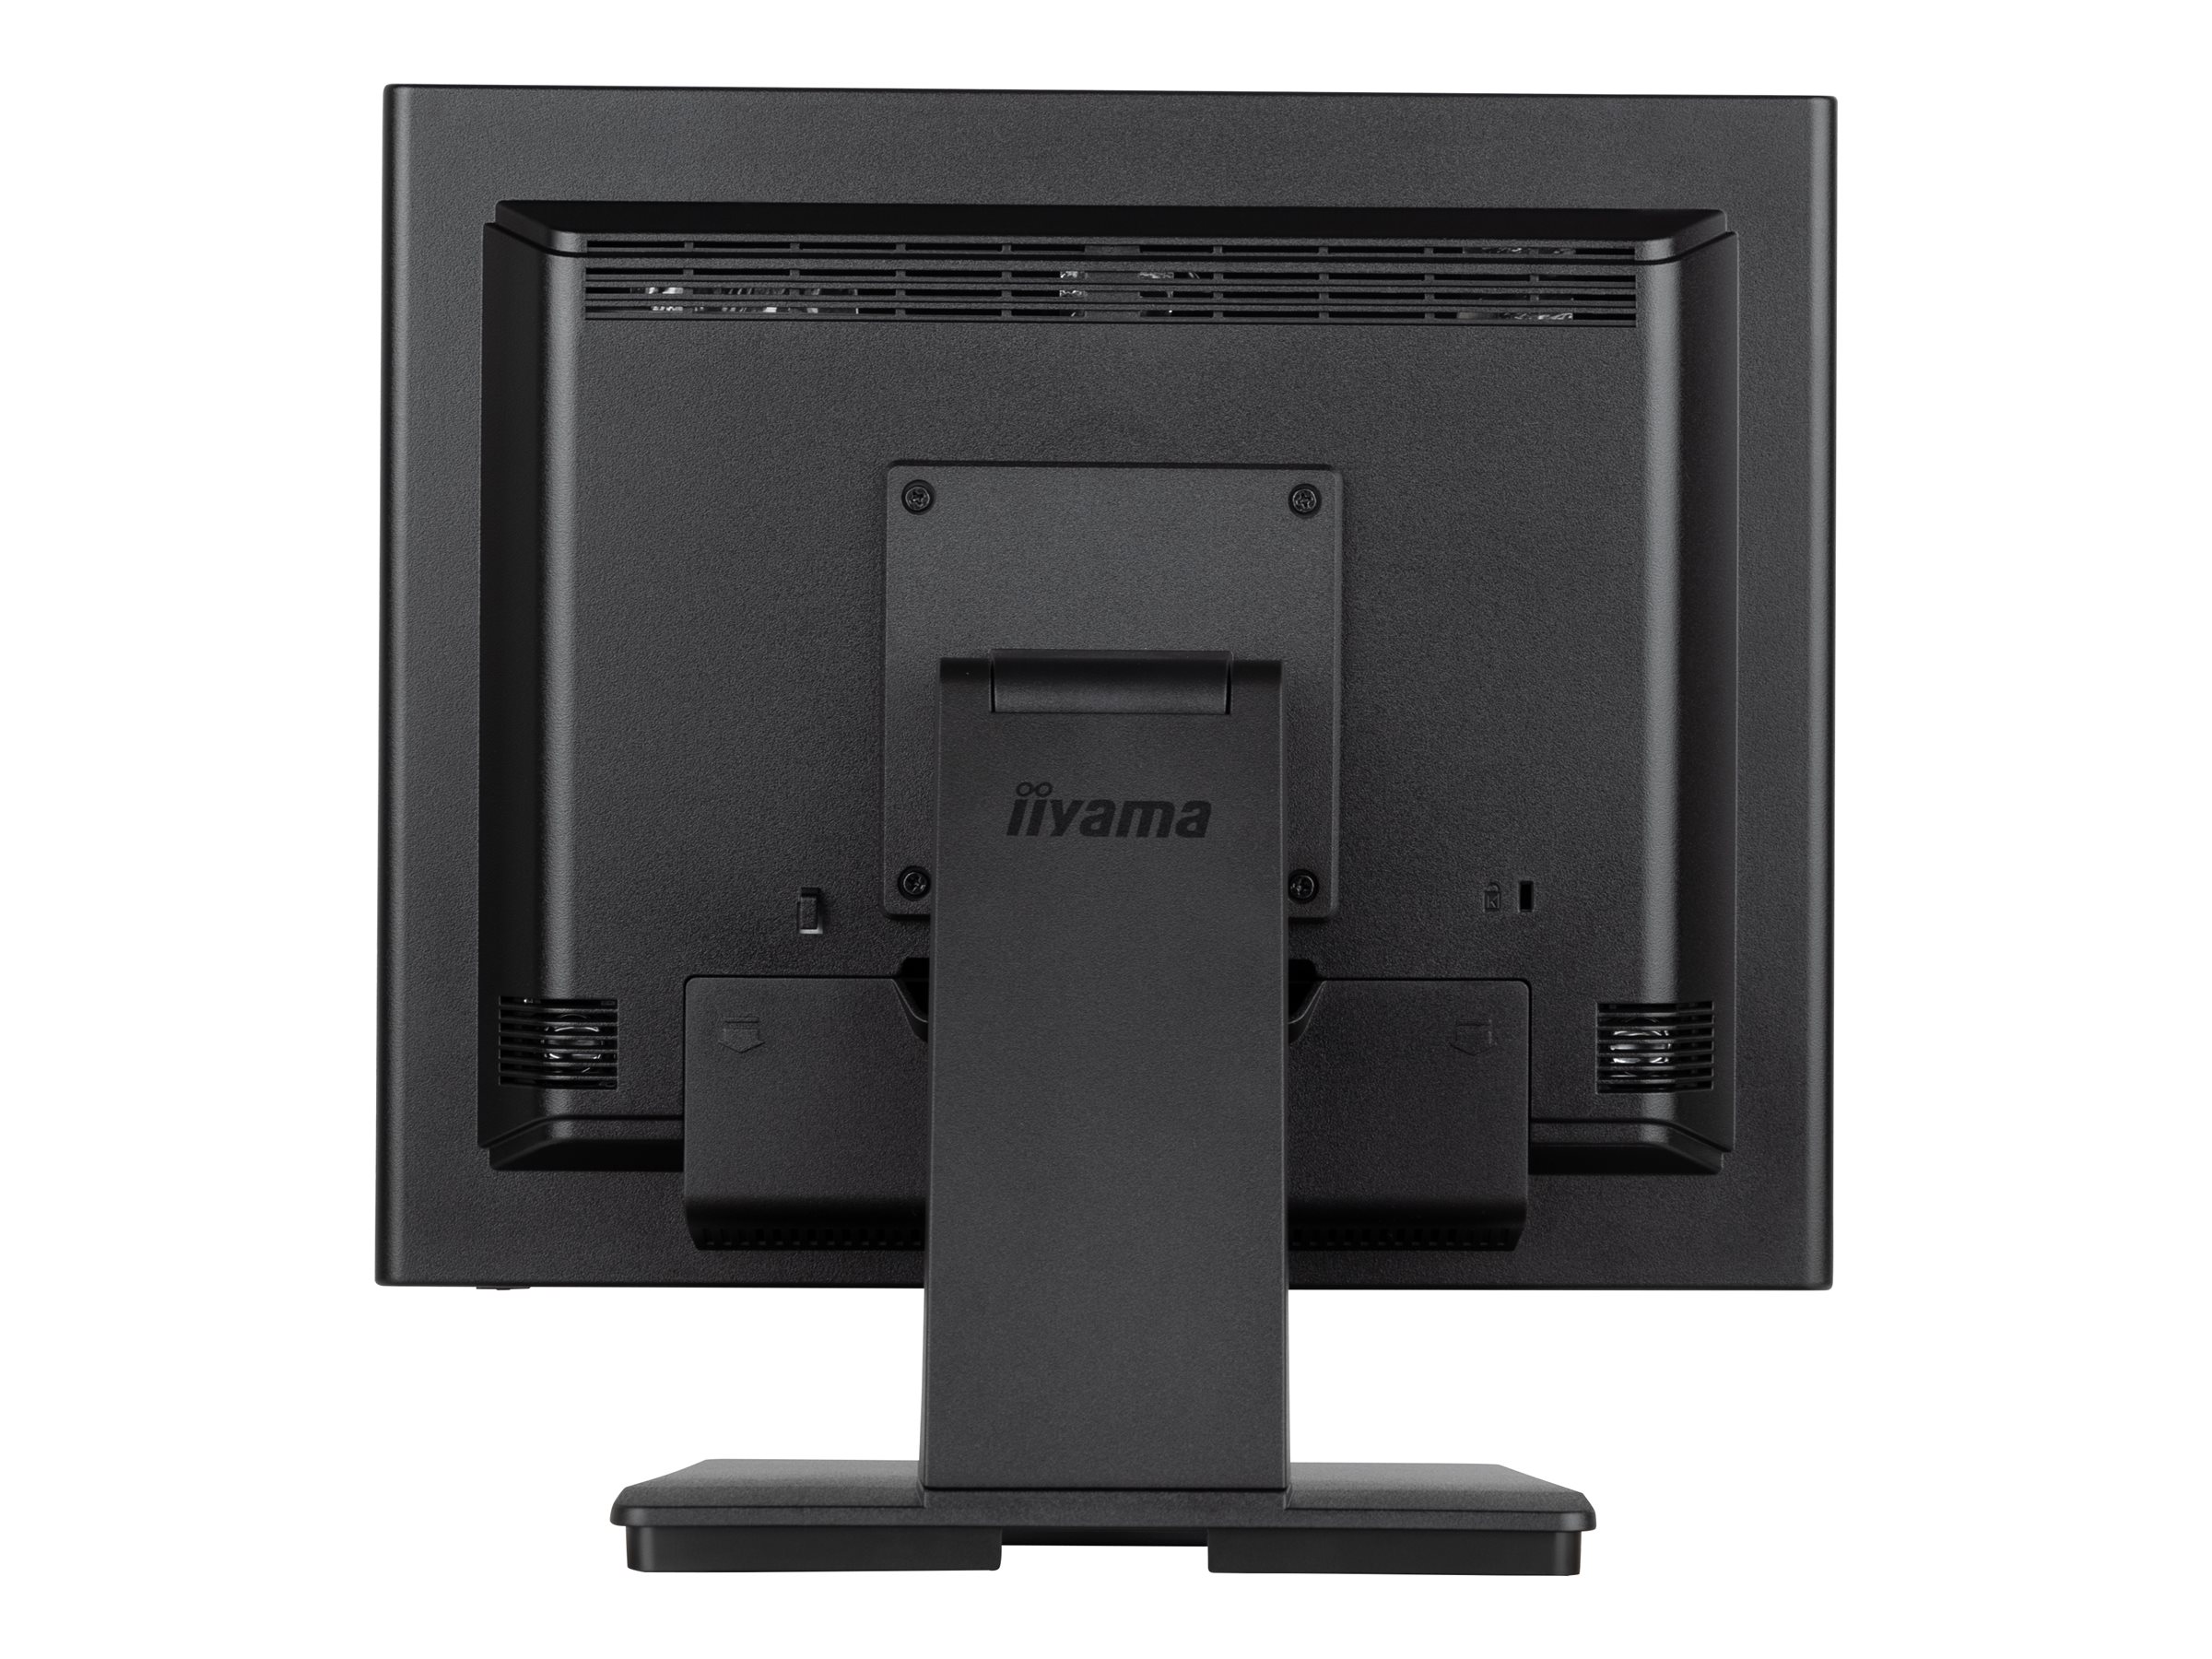 iiyama ProLite T1731SR-B1S - Écran LED - 17" - écran tactile - 1280 x 1024 - TN - 250 cd/m² - 1000:1 - 5 ms - HDMI, VGA, DisplayPort - haut-parleurs - noir, mat - T1731SR-B1S - Écrans d'ordinateur